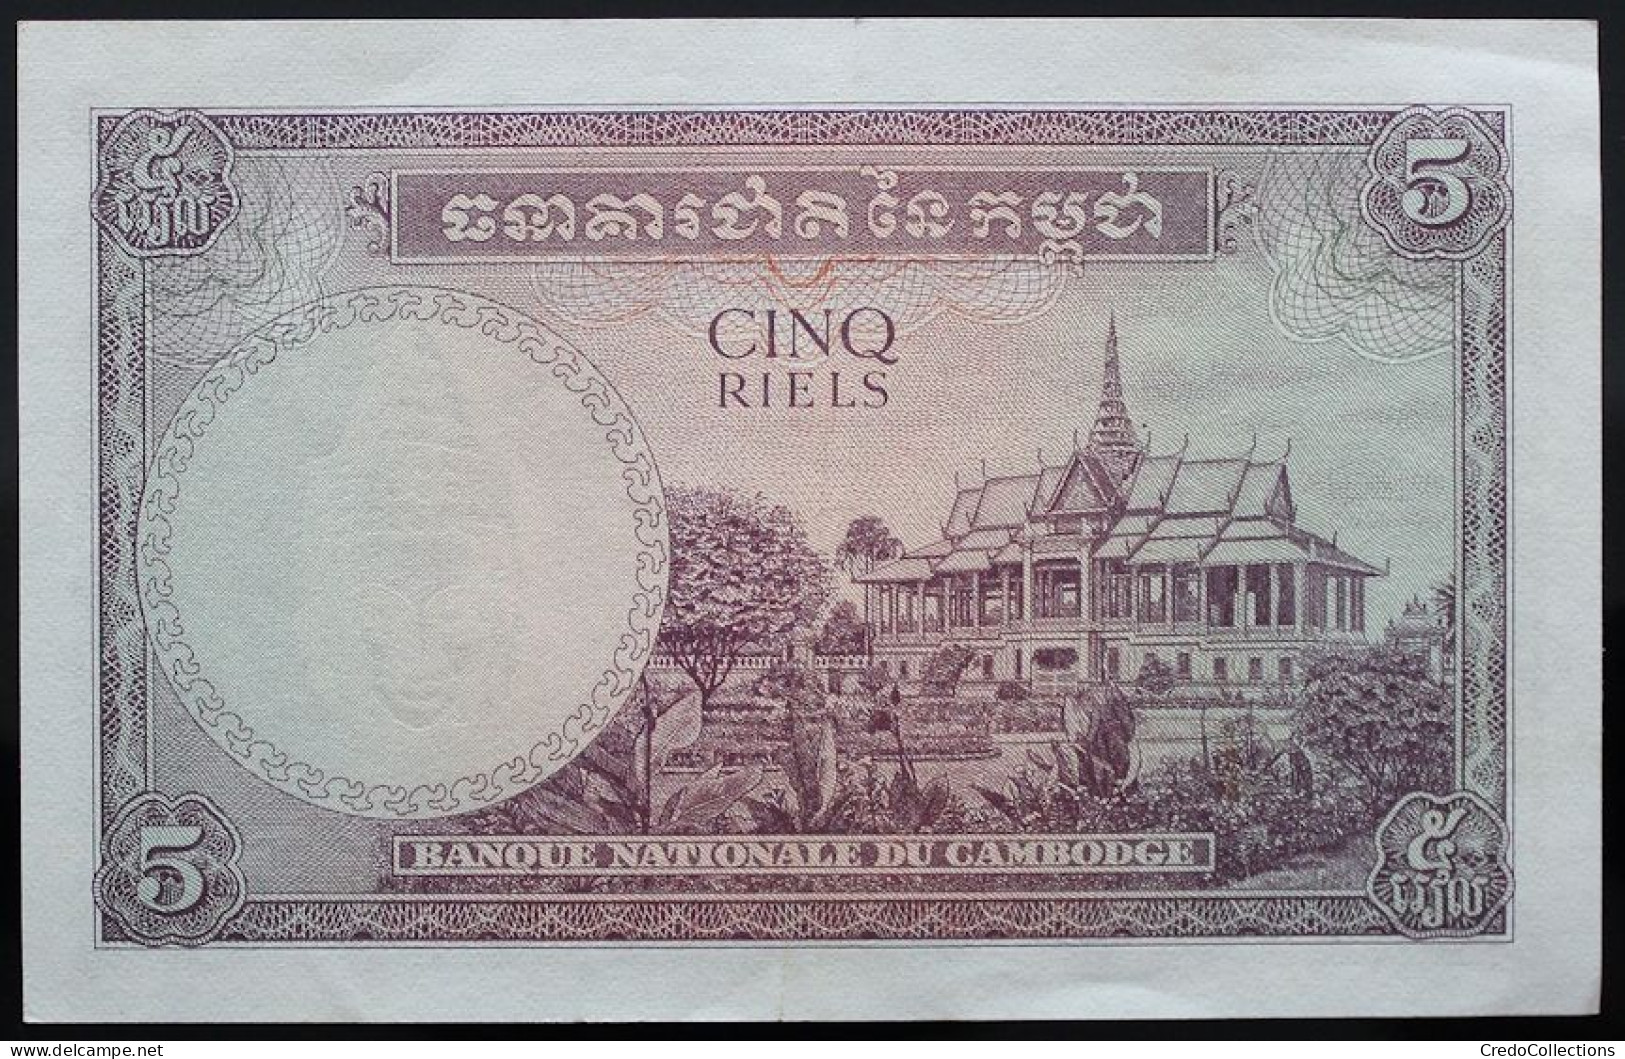 Cambodge - 5 Riels - 1955 - PICK 2a - SUP+ - Cambodja